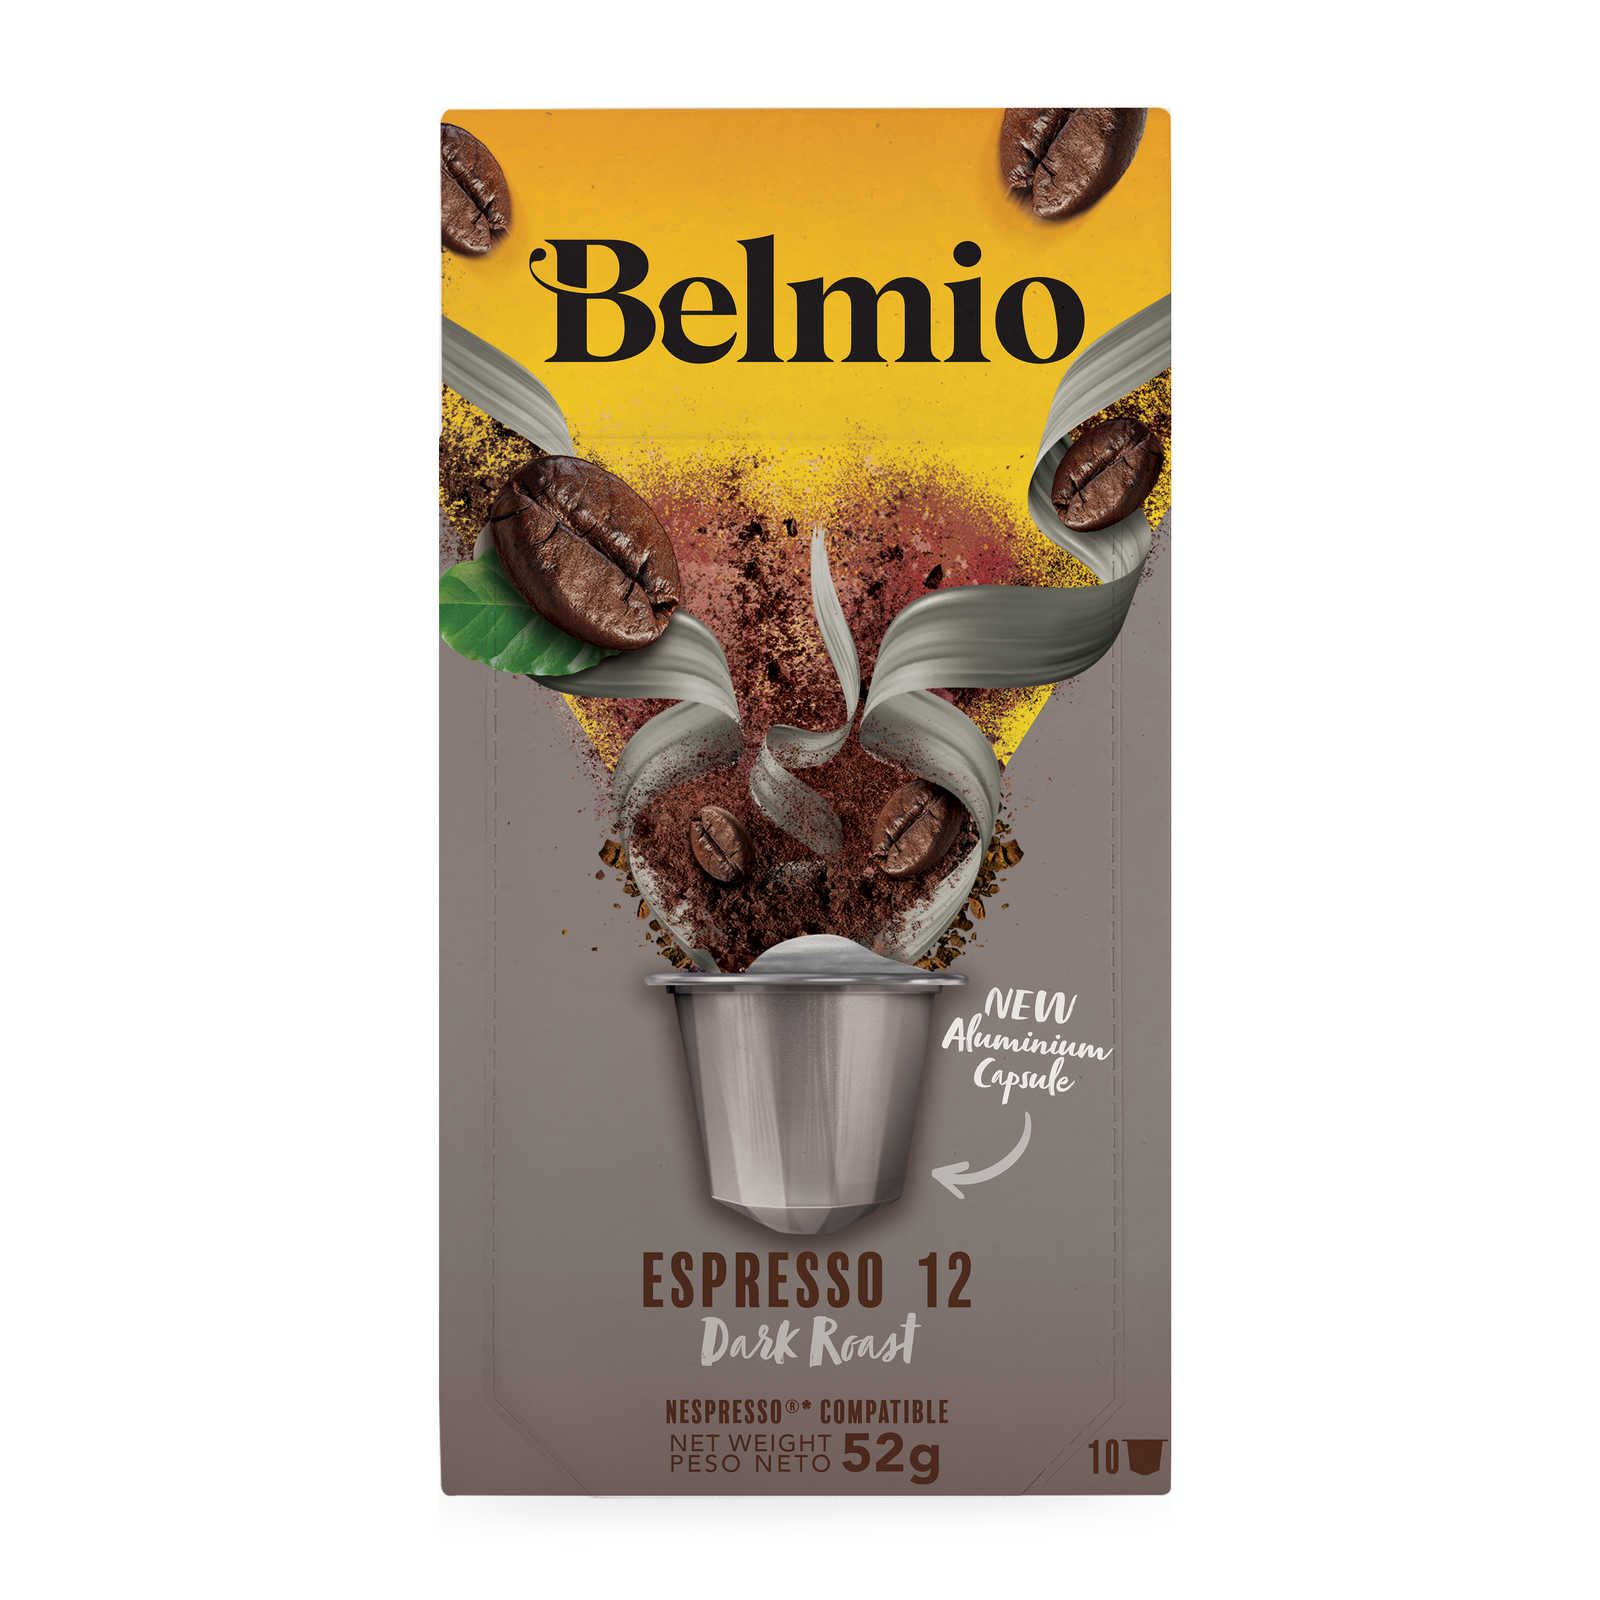 Belmio